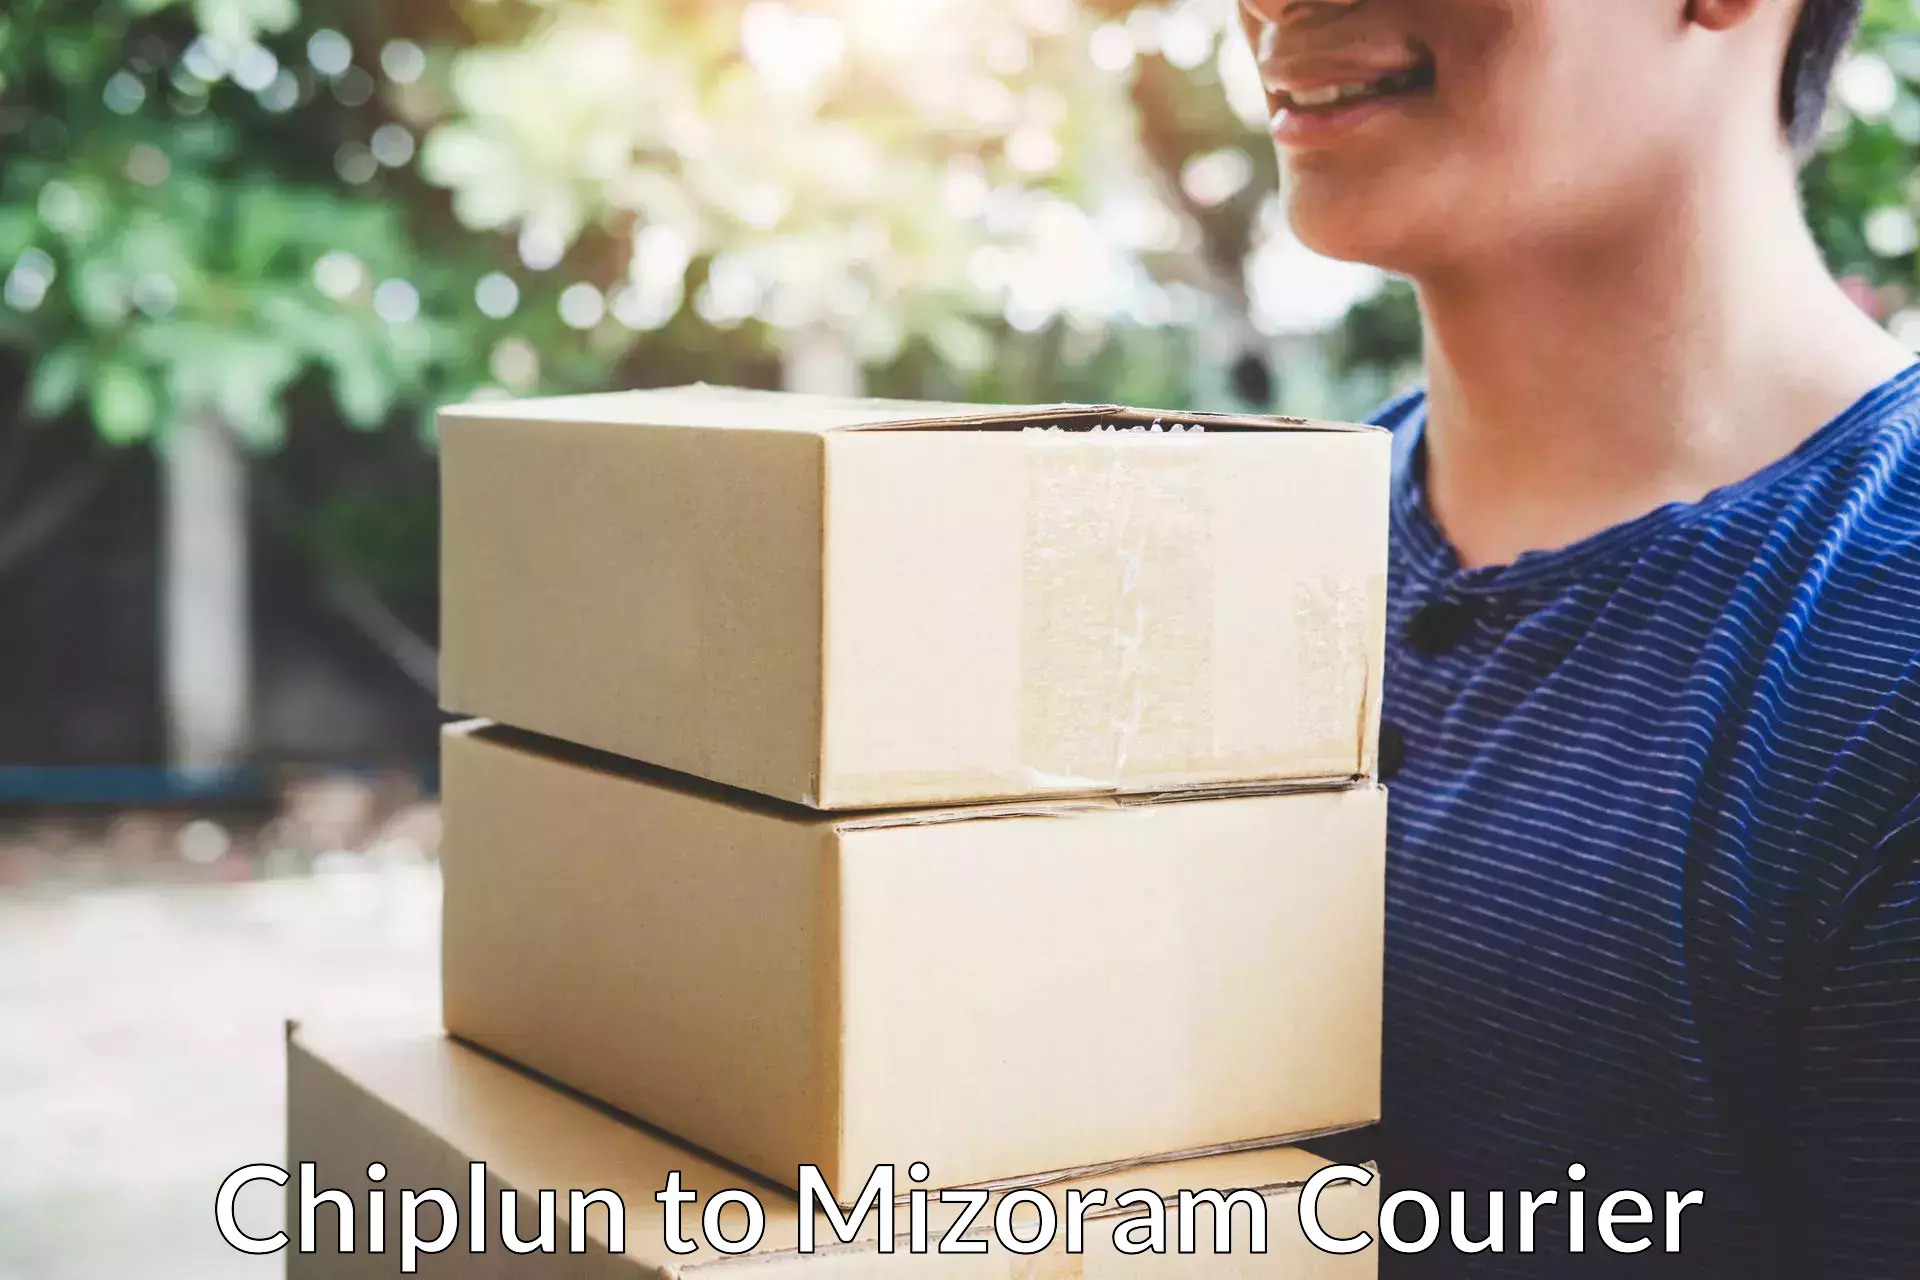 Premium moving services Chiplun to Mizoram